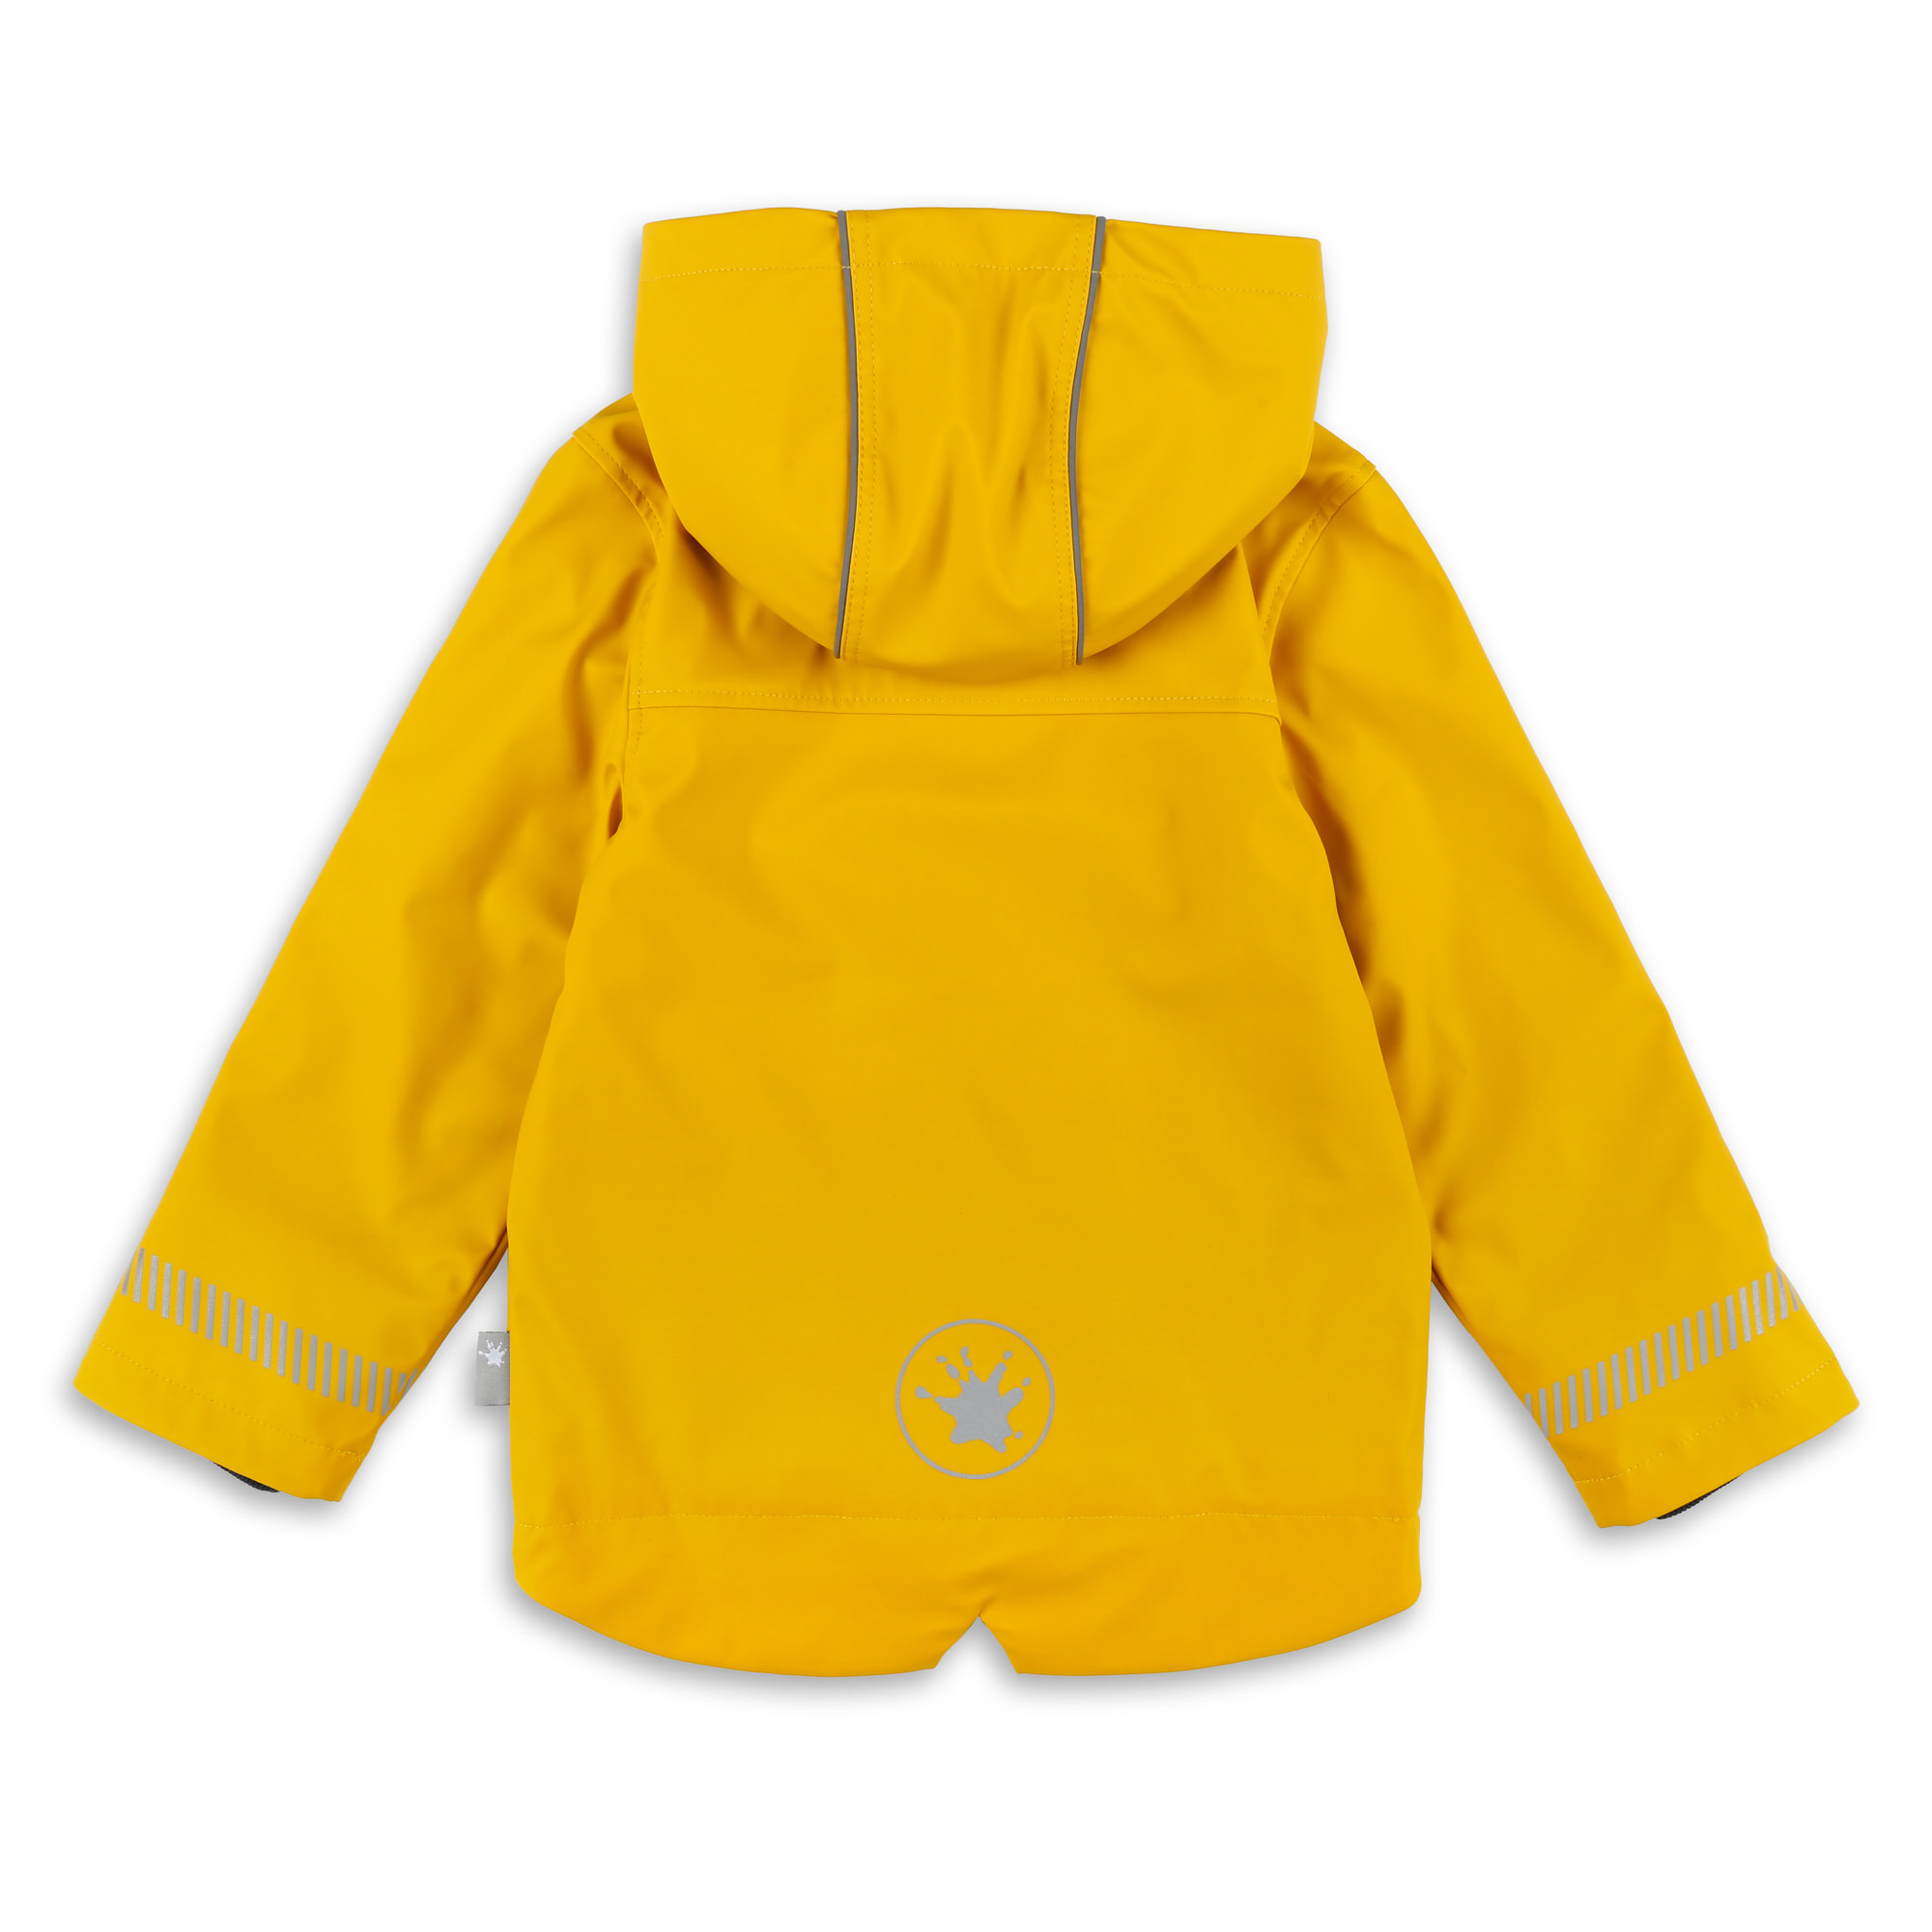 Kids' rain jacket, lined, yellow